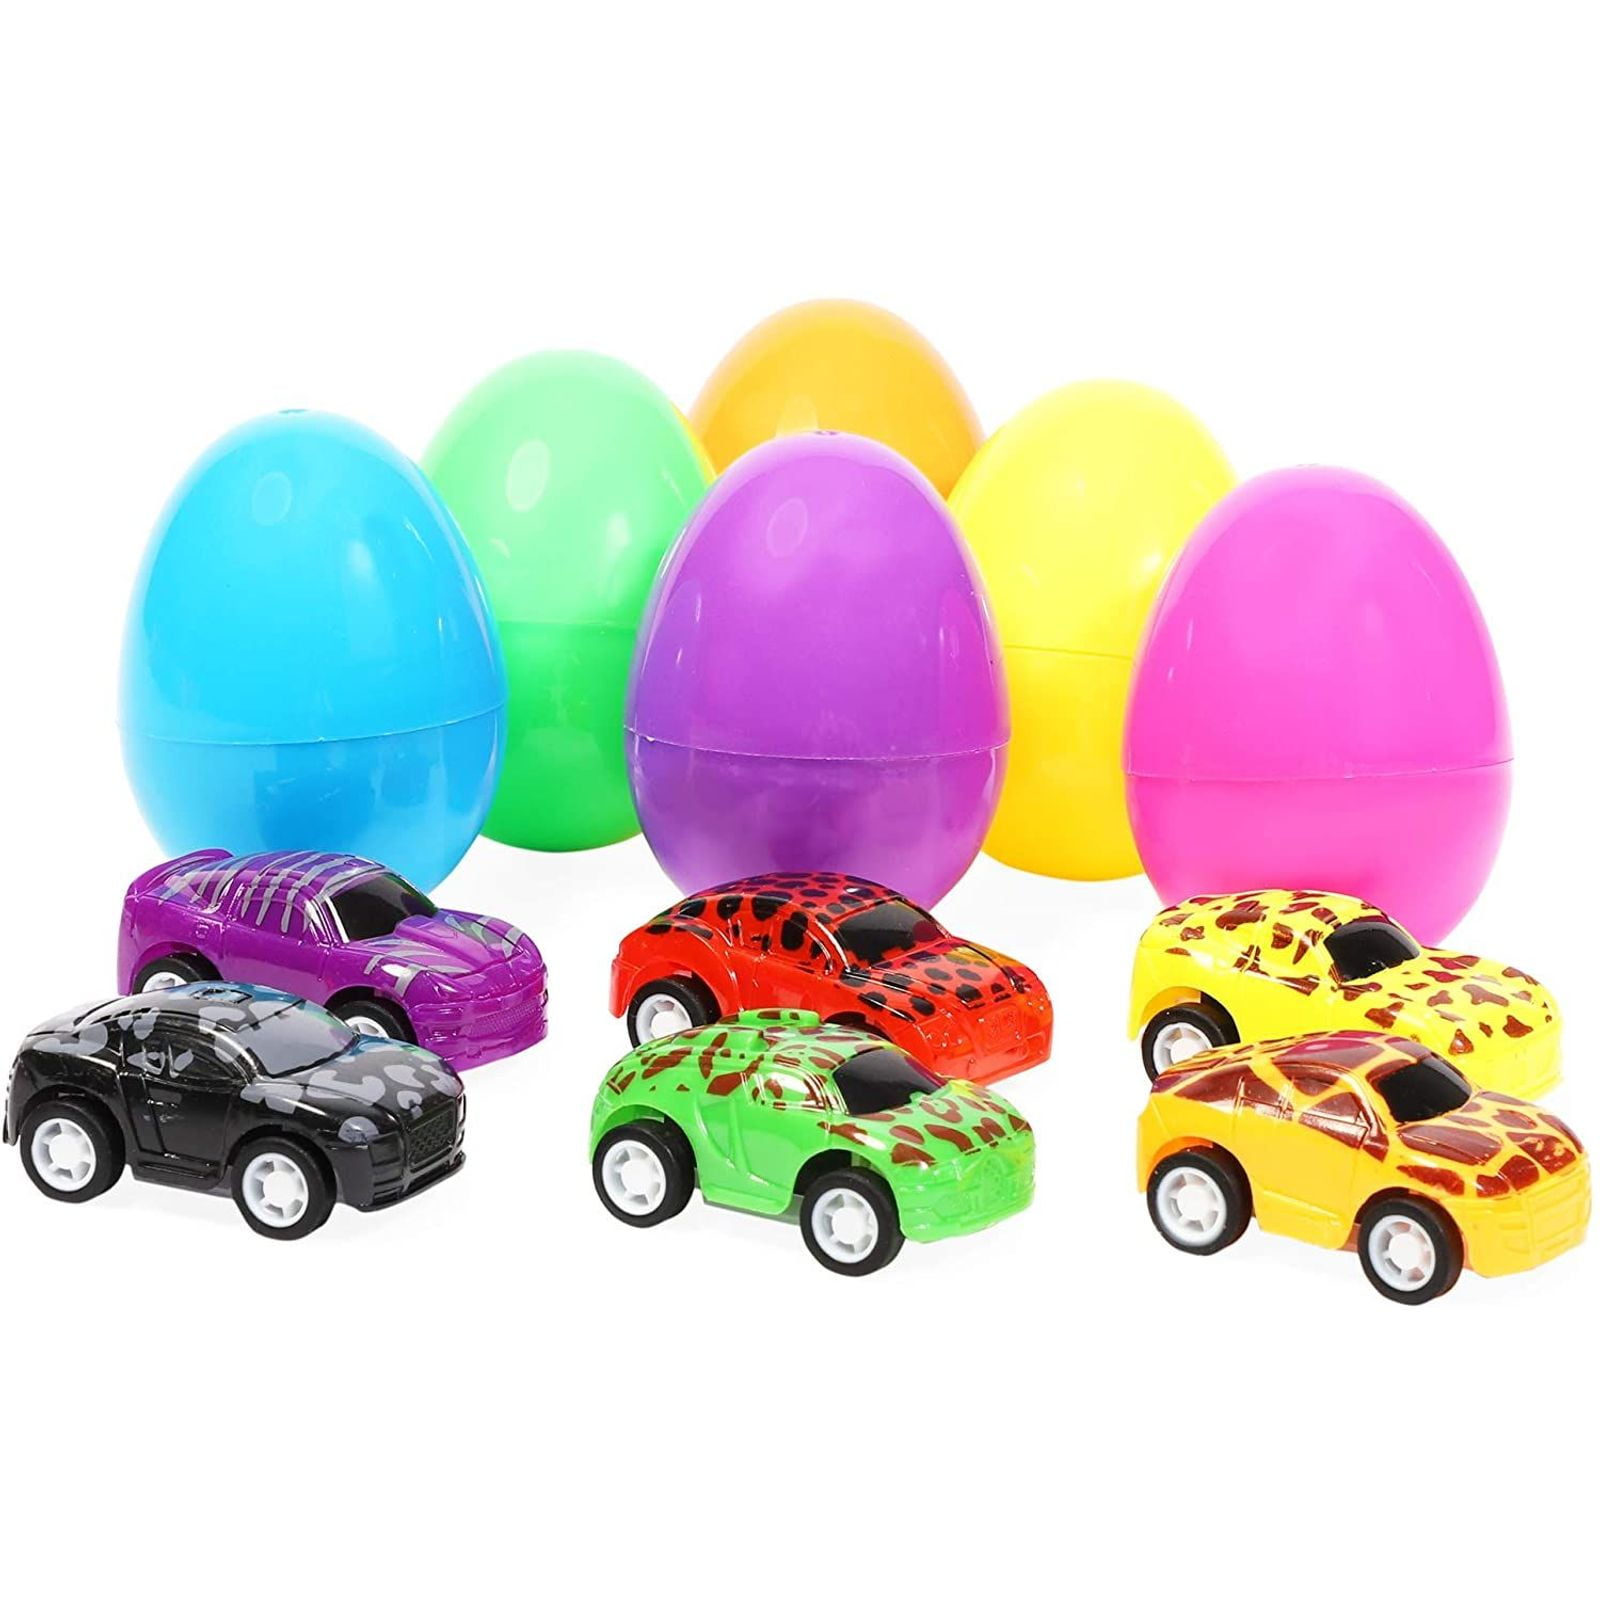 Prefilled Easter Eggs Easter Basket Stuffers for Toddler Kids Girls Boys 4 Pack Jumbo Easter Eggs Filled with Dinosaur Pull Back Cars Toys Inside 